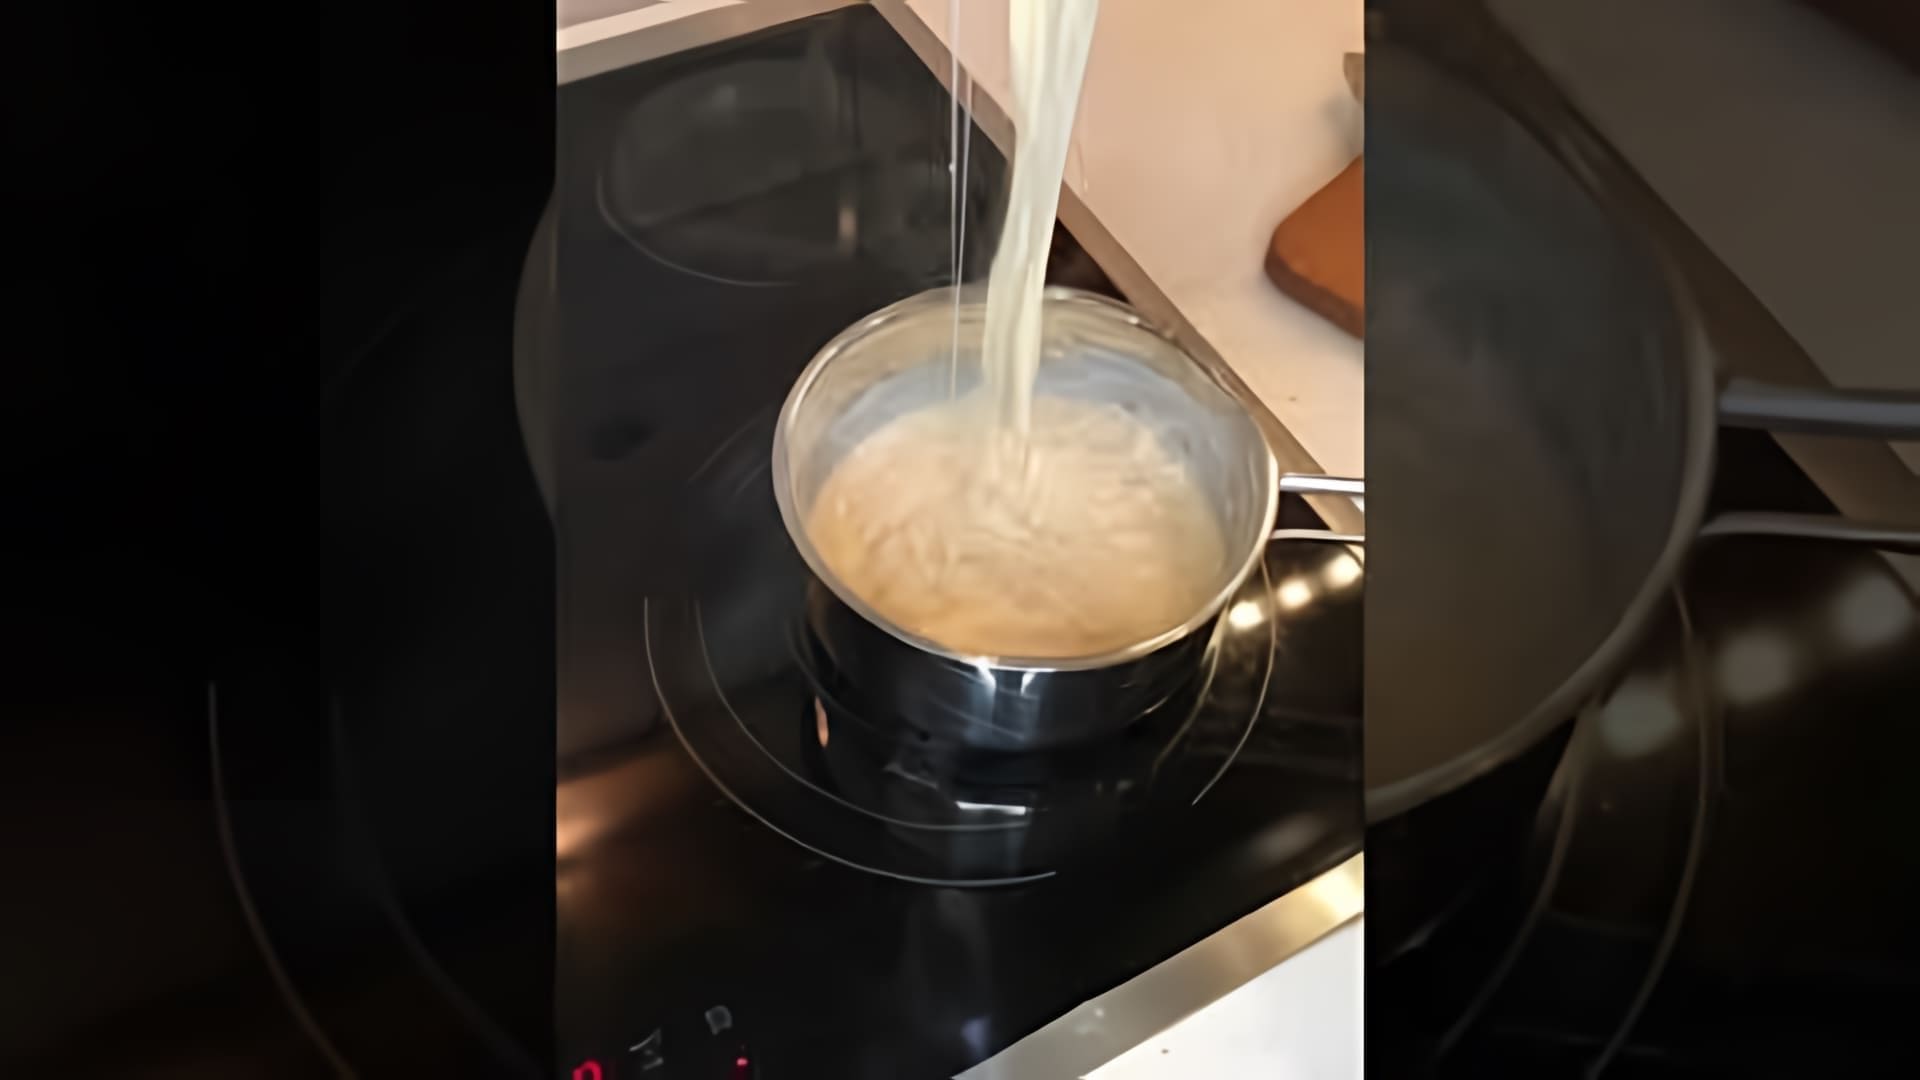 В этом видео демонстрируется рецепт приготовления макарон с сыром за 15 минут